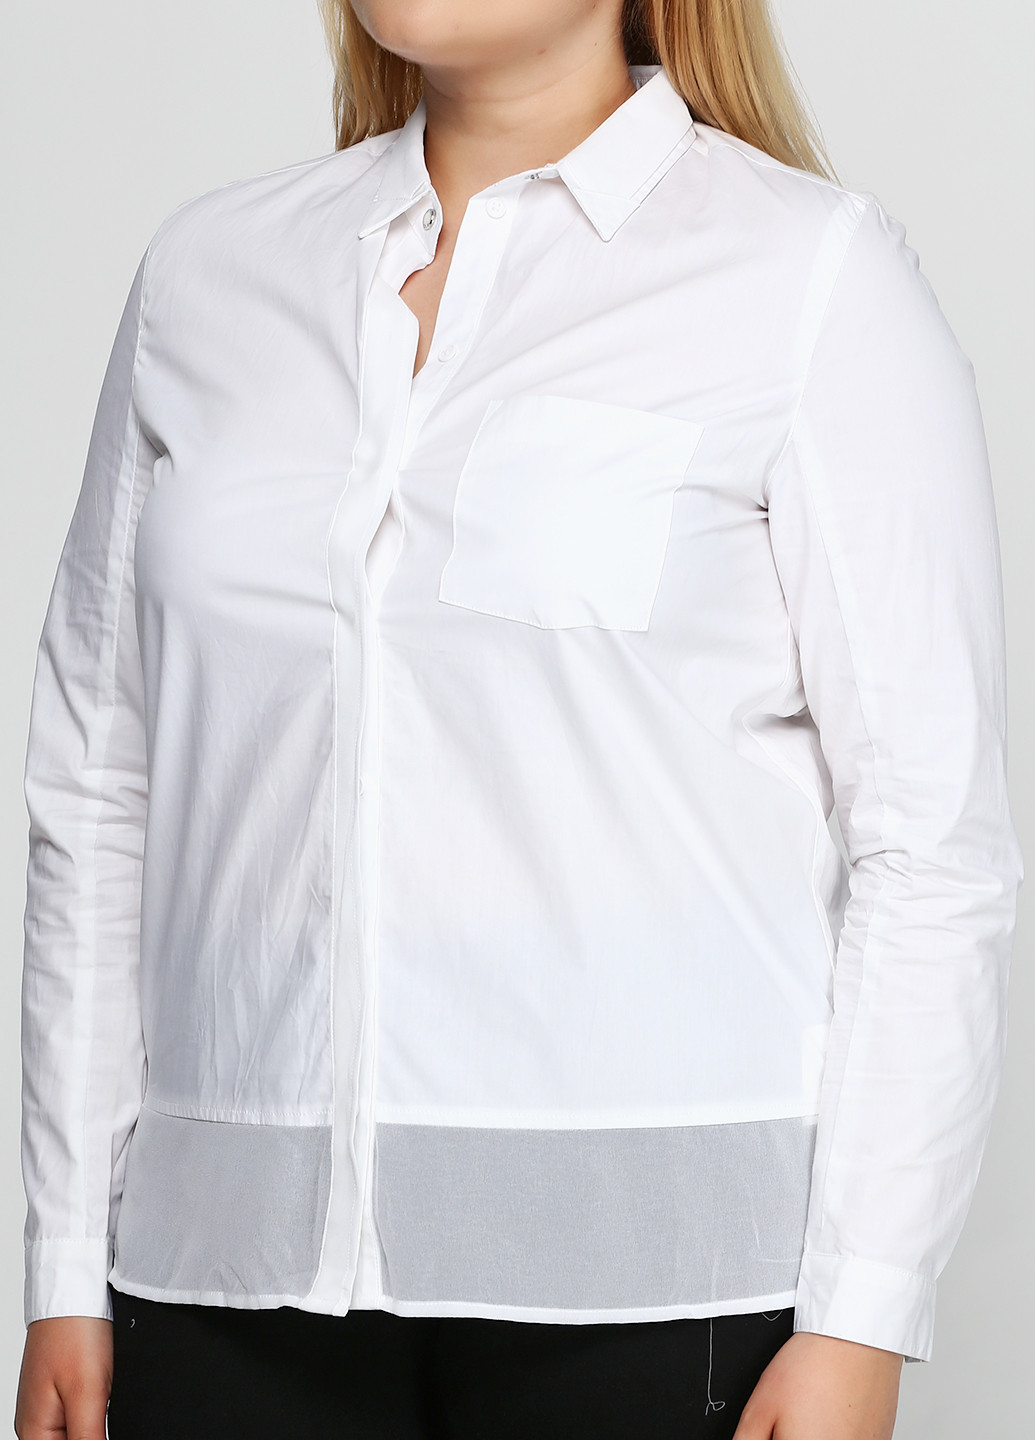 Біла демісезонна блуза Kookai